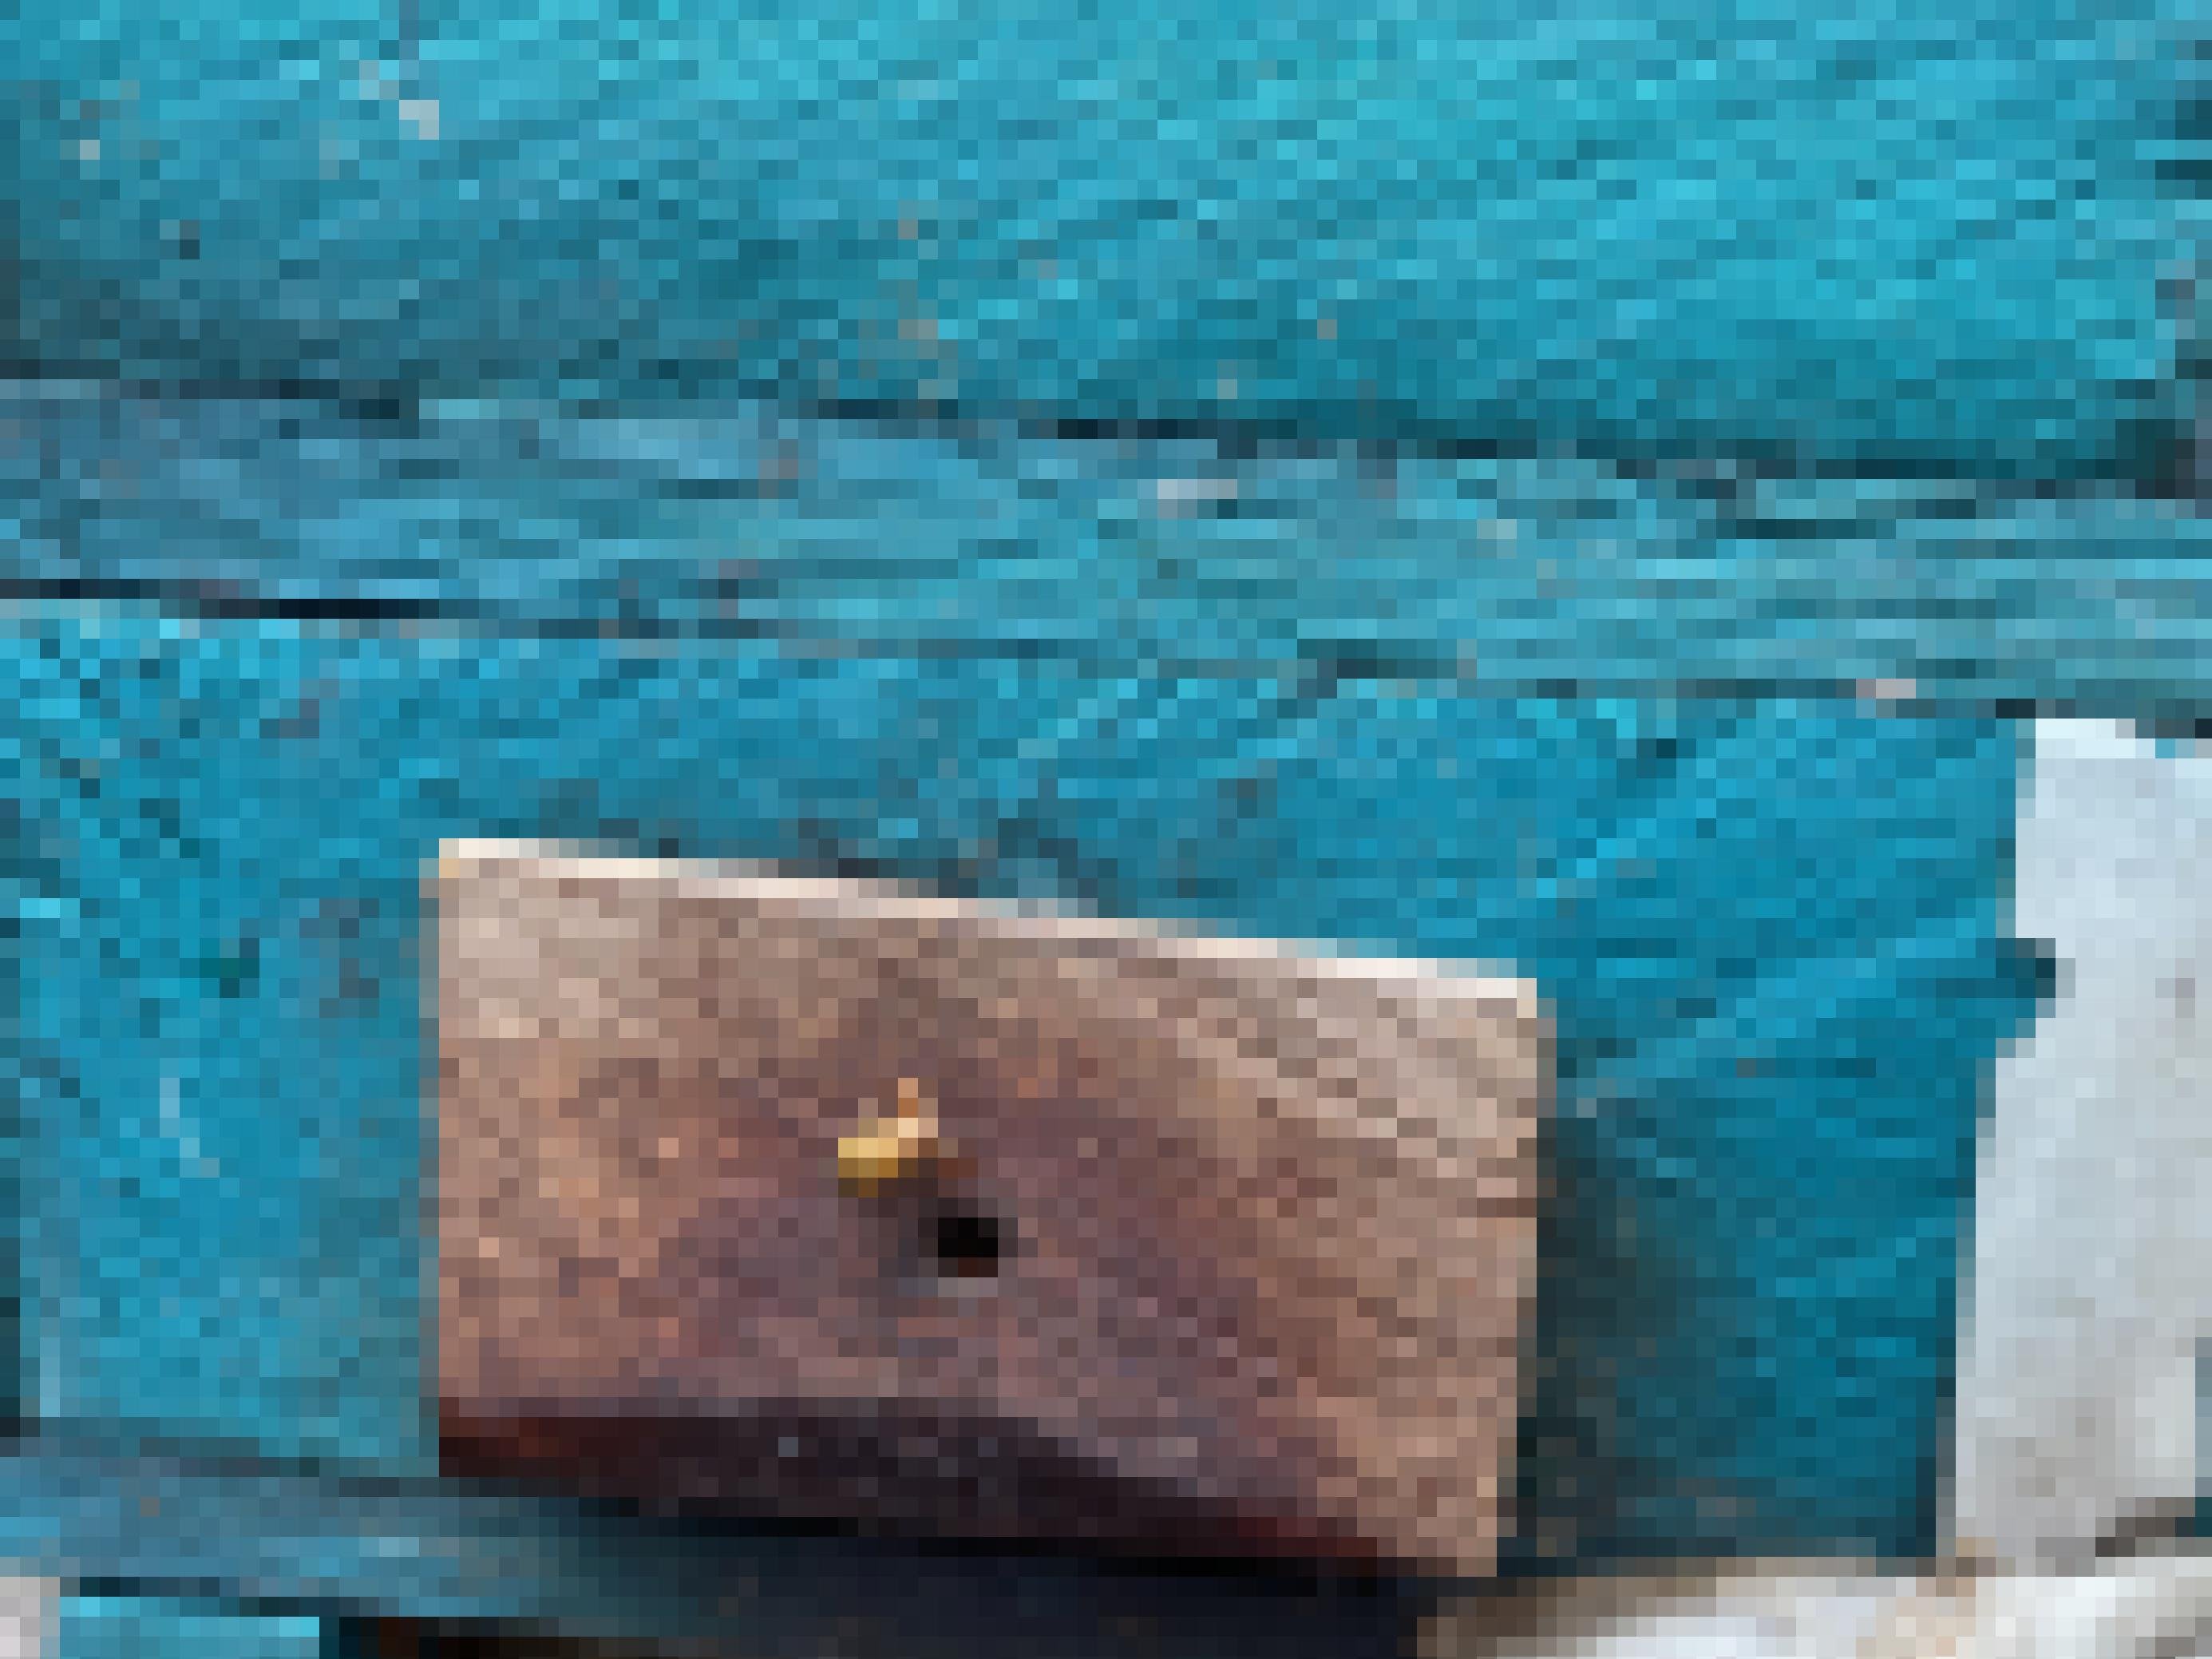 Ein türkis gestrichener Holzkasten mit einem kleinen Einflugsloch, davor krabbelt eine Wildbiene.